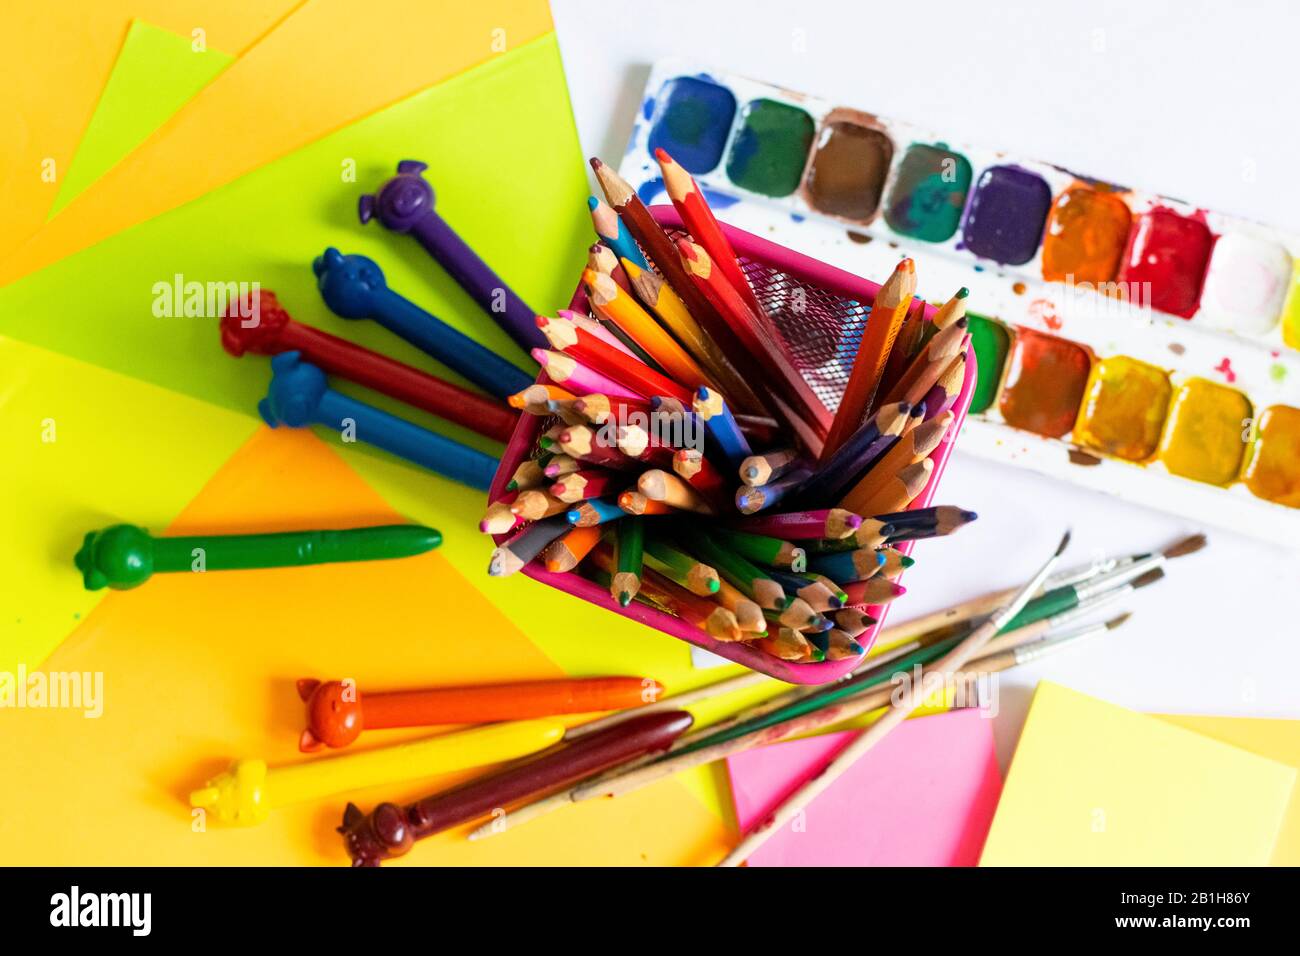 Aquarell, Gouache, Farbbürsten, farbige und Wachskrebse. Set für Zeichnen, Kreativität und Hobbys. Stockfoto